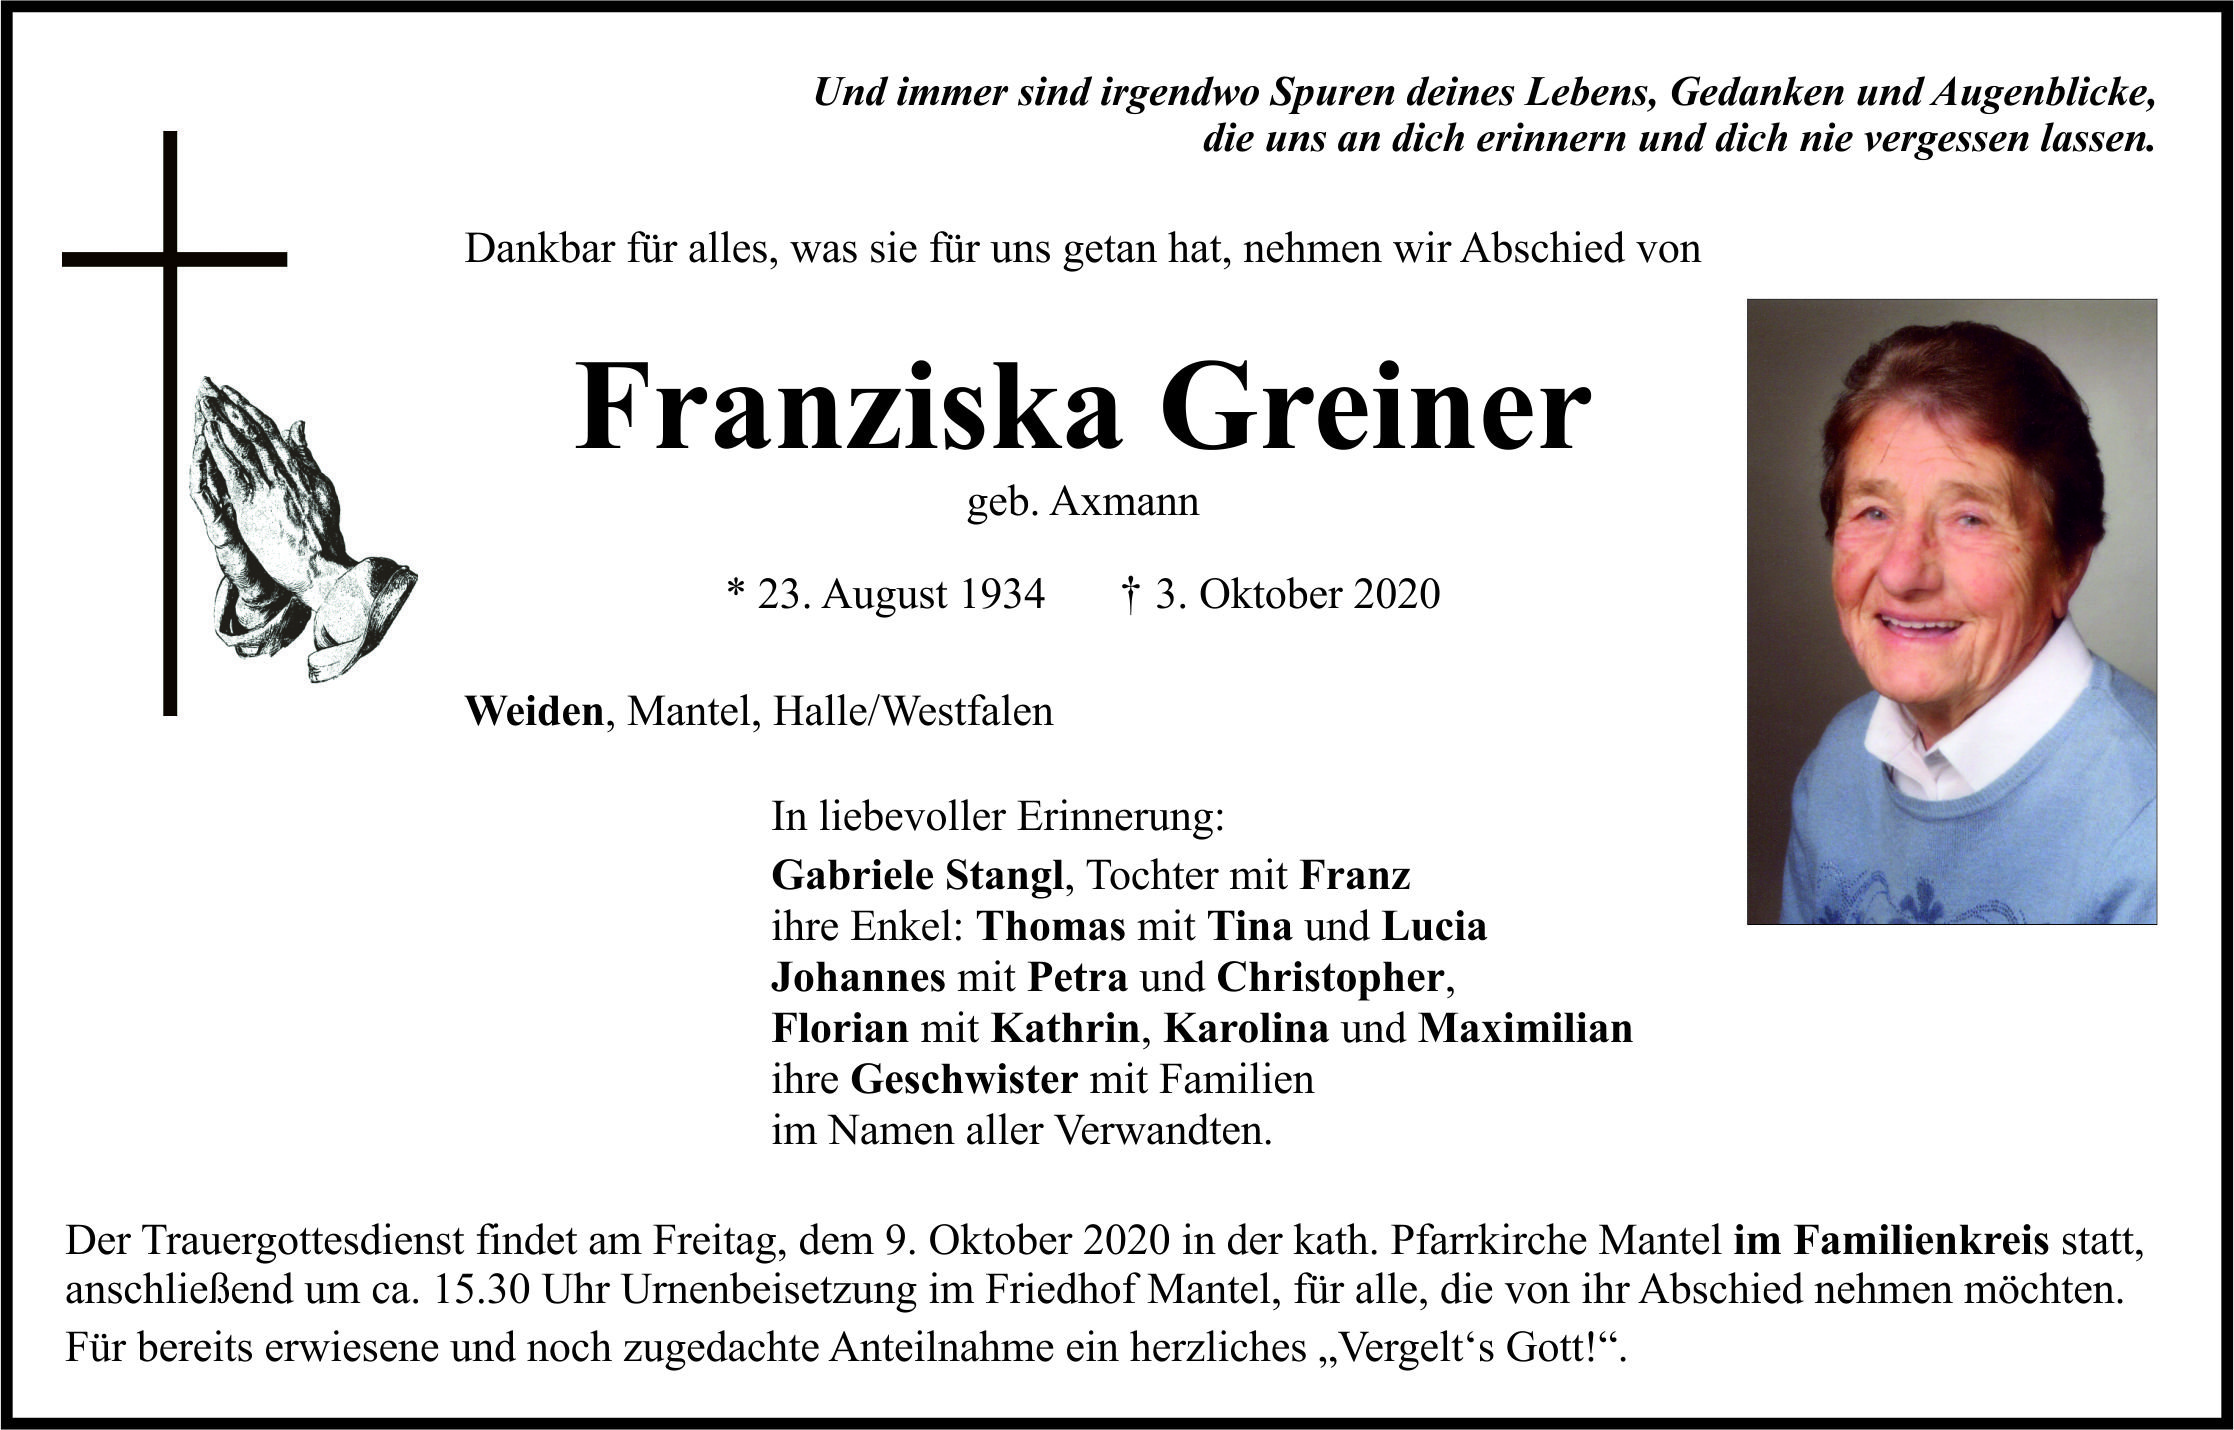 Traueranzeige Franziska Greiner, Weiden